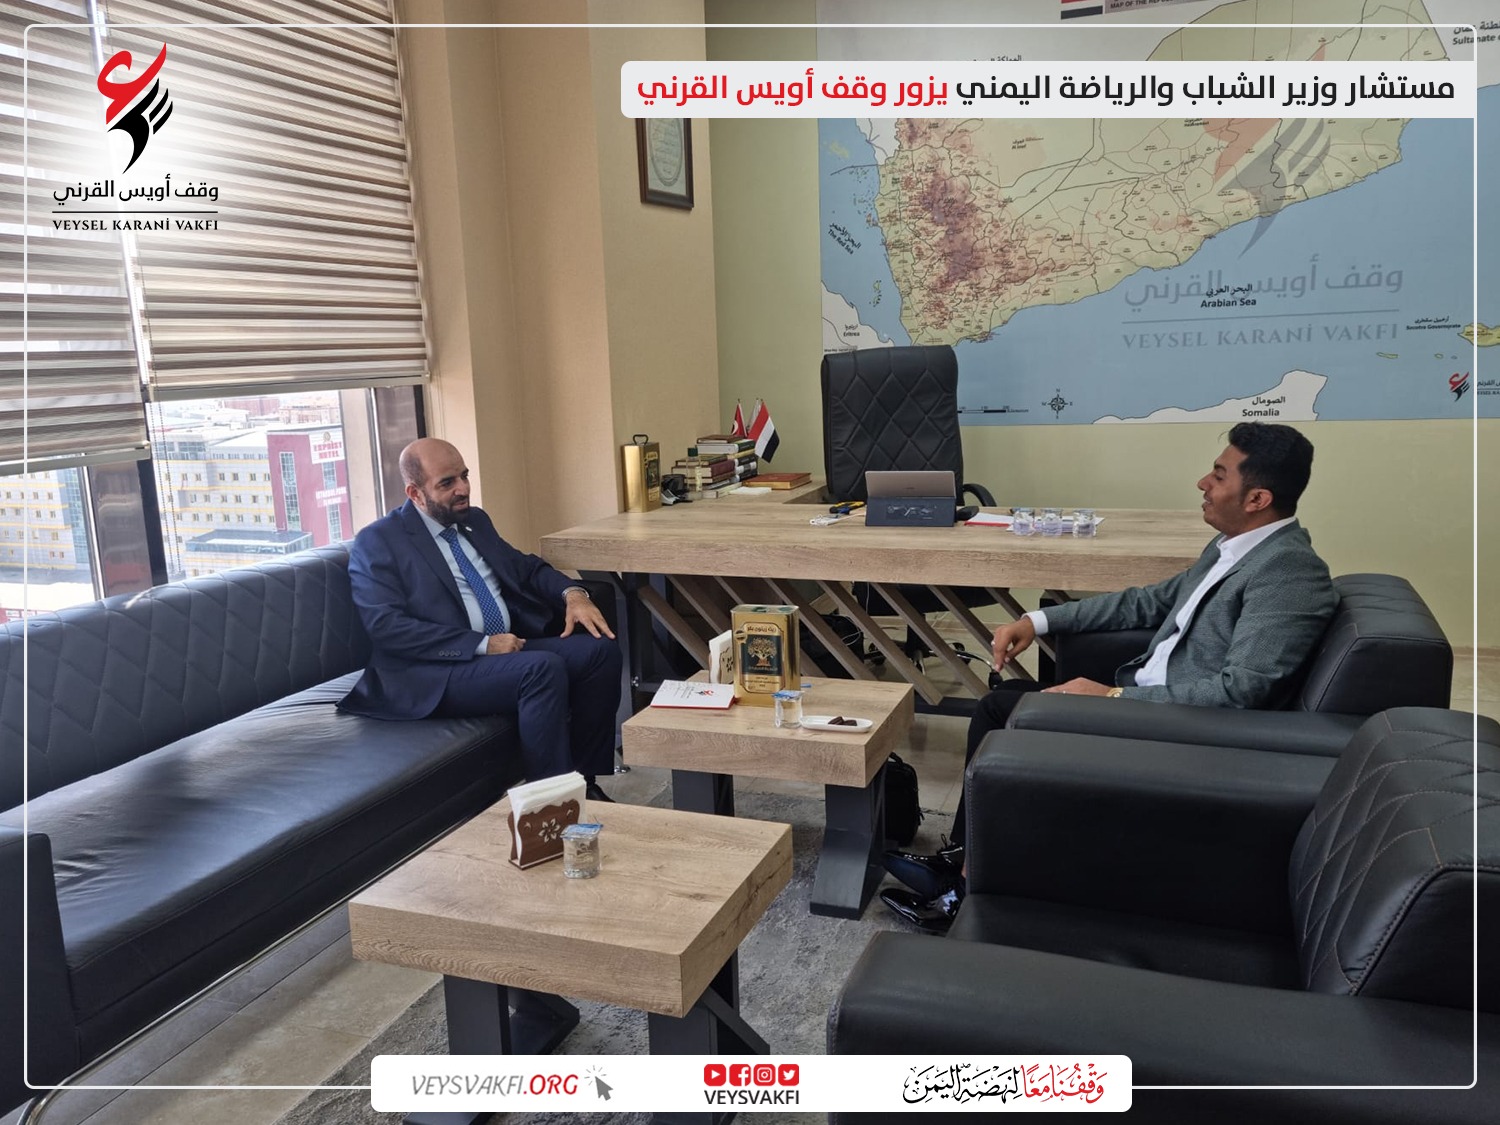 مستشار وزير الشباب والرياضة اليمني يزور وقف أويس القرني